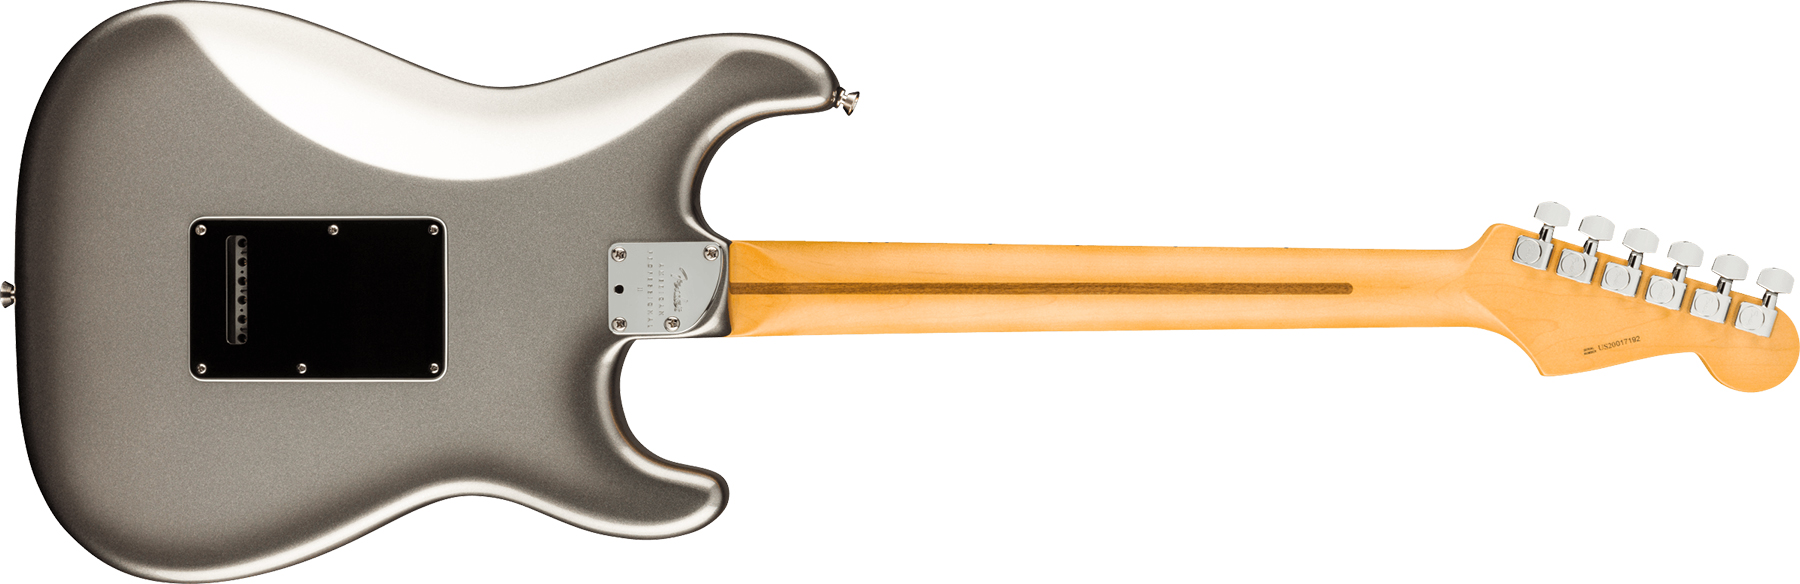 Fender Strat American Professional Ii Lh Gaucher Usa Mn - Mercury - Guitarra electrica para zurdos - Variation 1